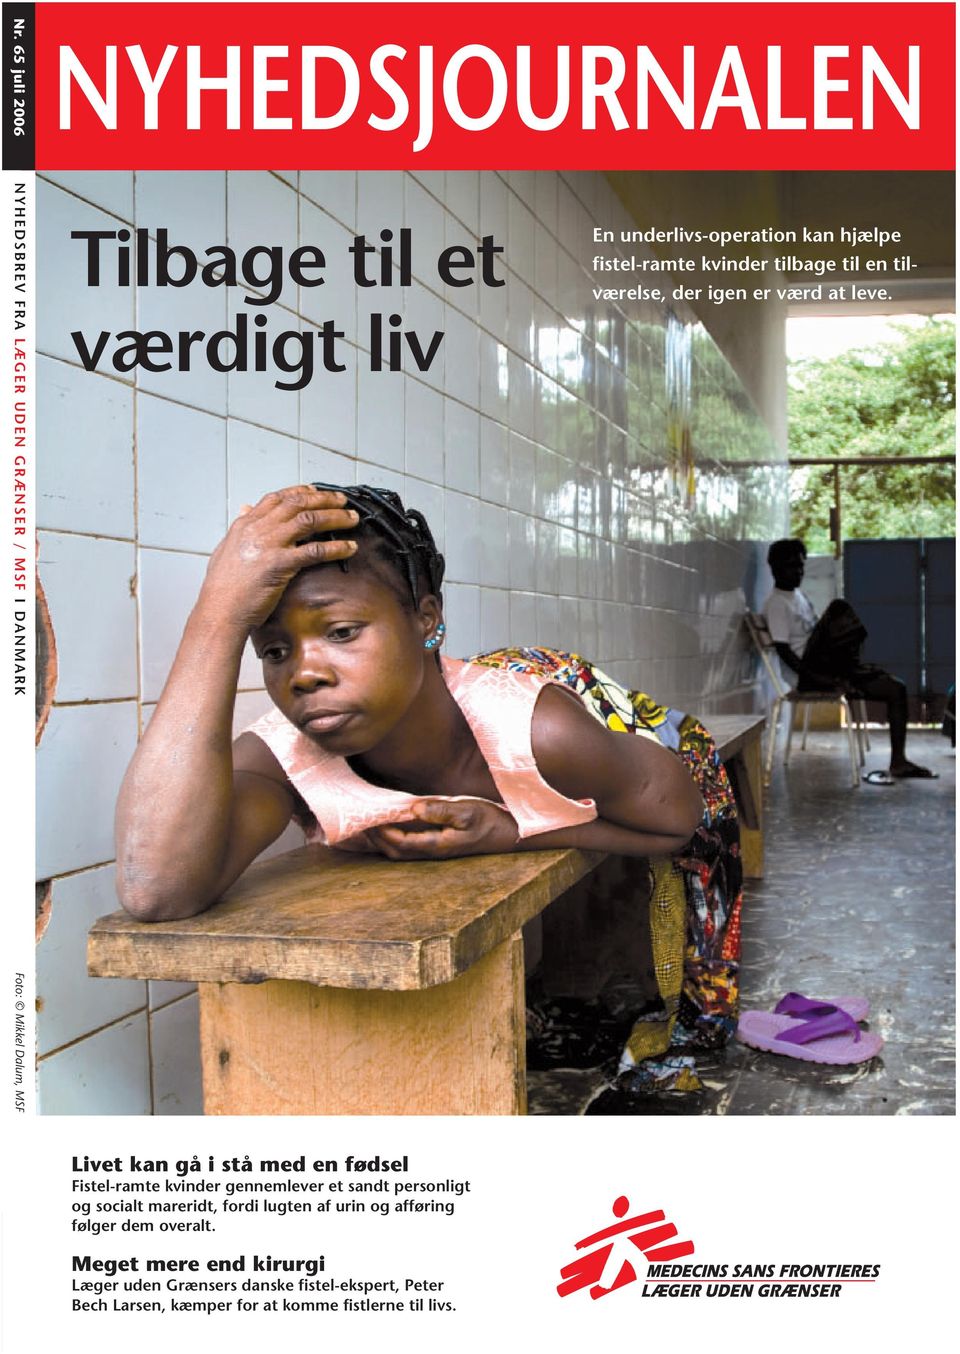 Foto: Mikkel Dalum, MSF Livet kan gå i stå med en fødsel Fistel-ramte kvinder gennemlever et sandt personligt og socialt mareridt,